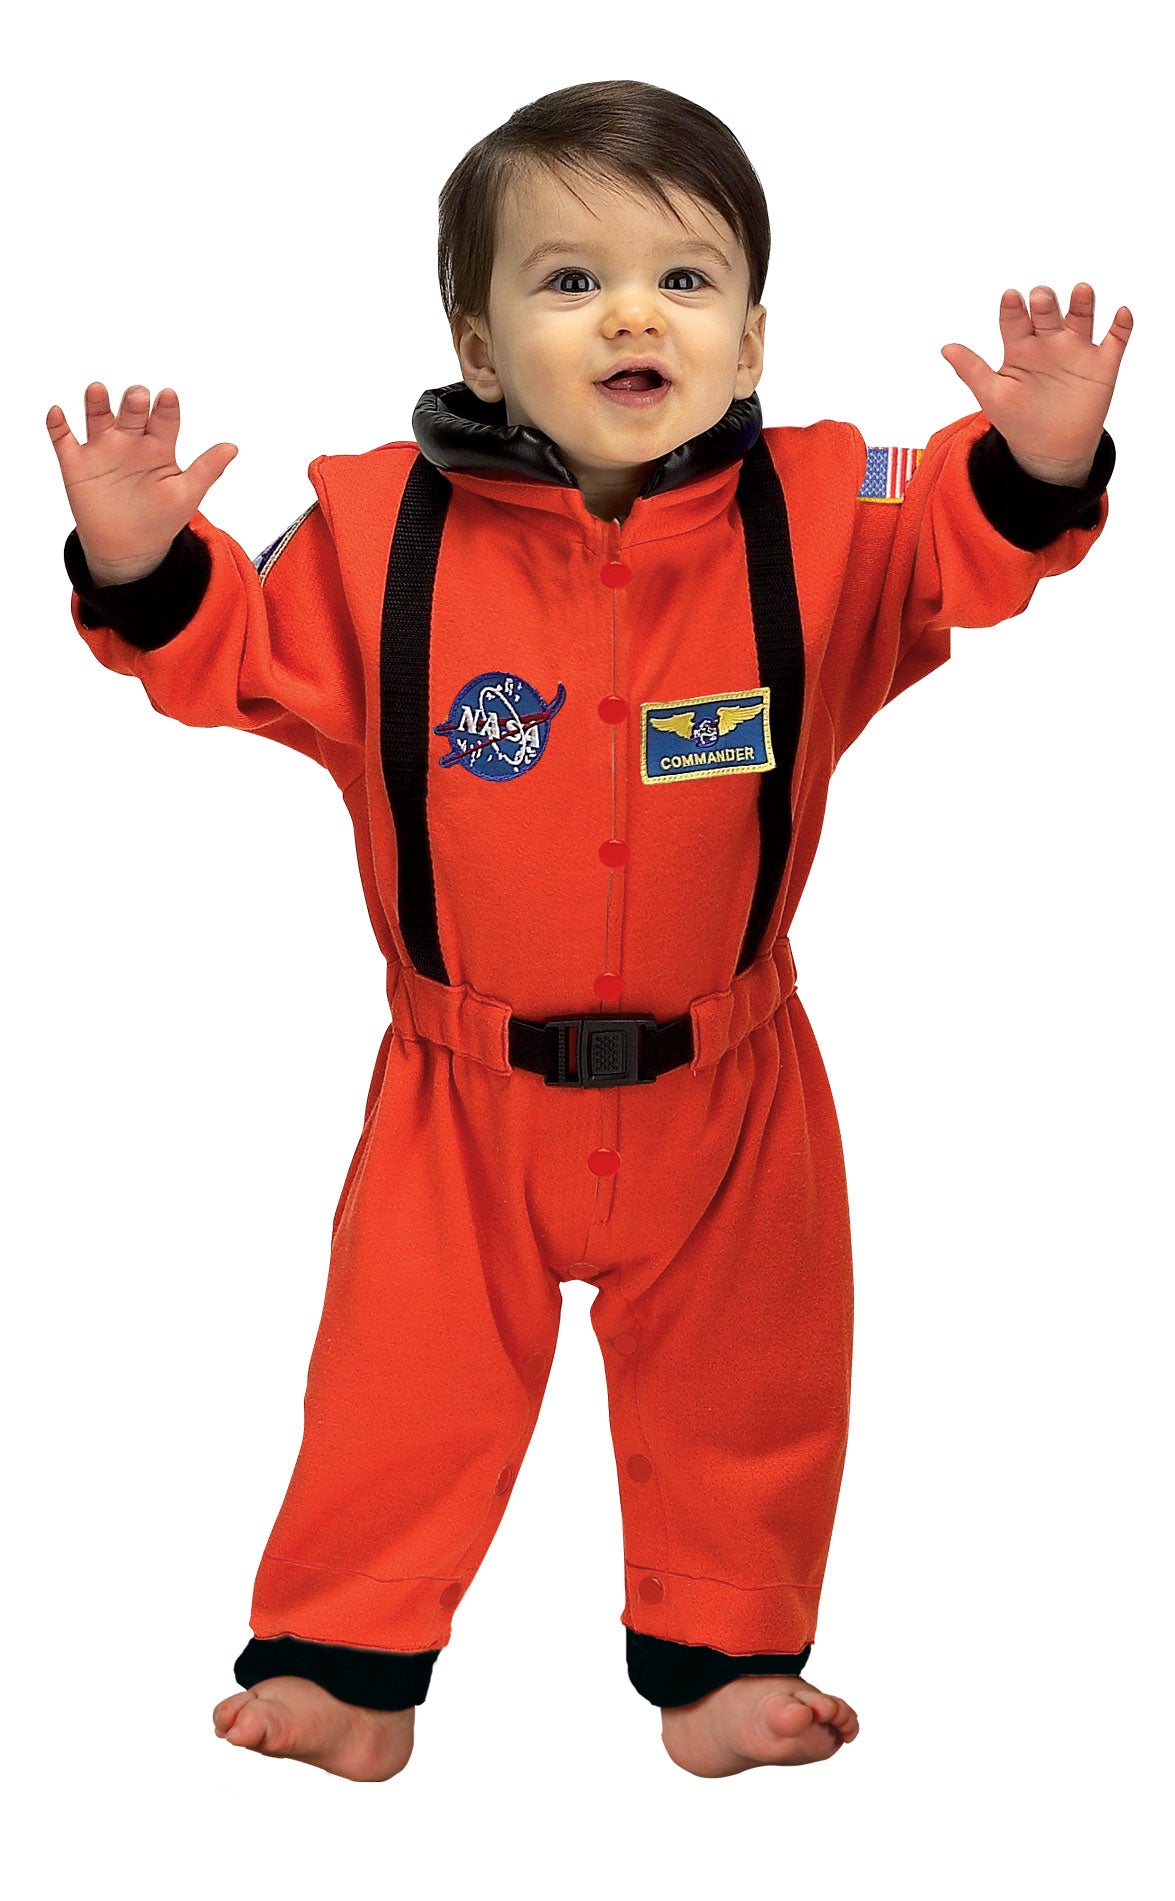 Jr. Astronaut Suit` size 6 to 12 Months (Orange)